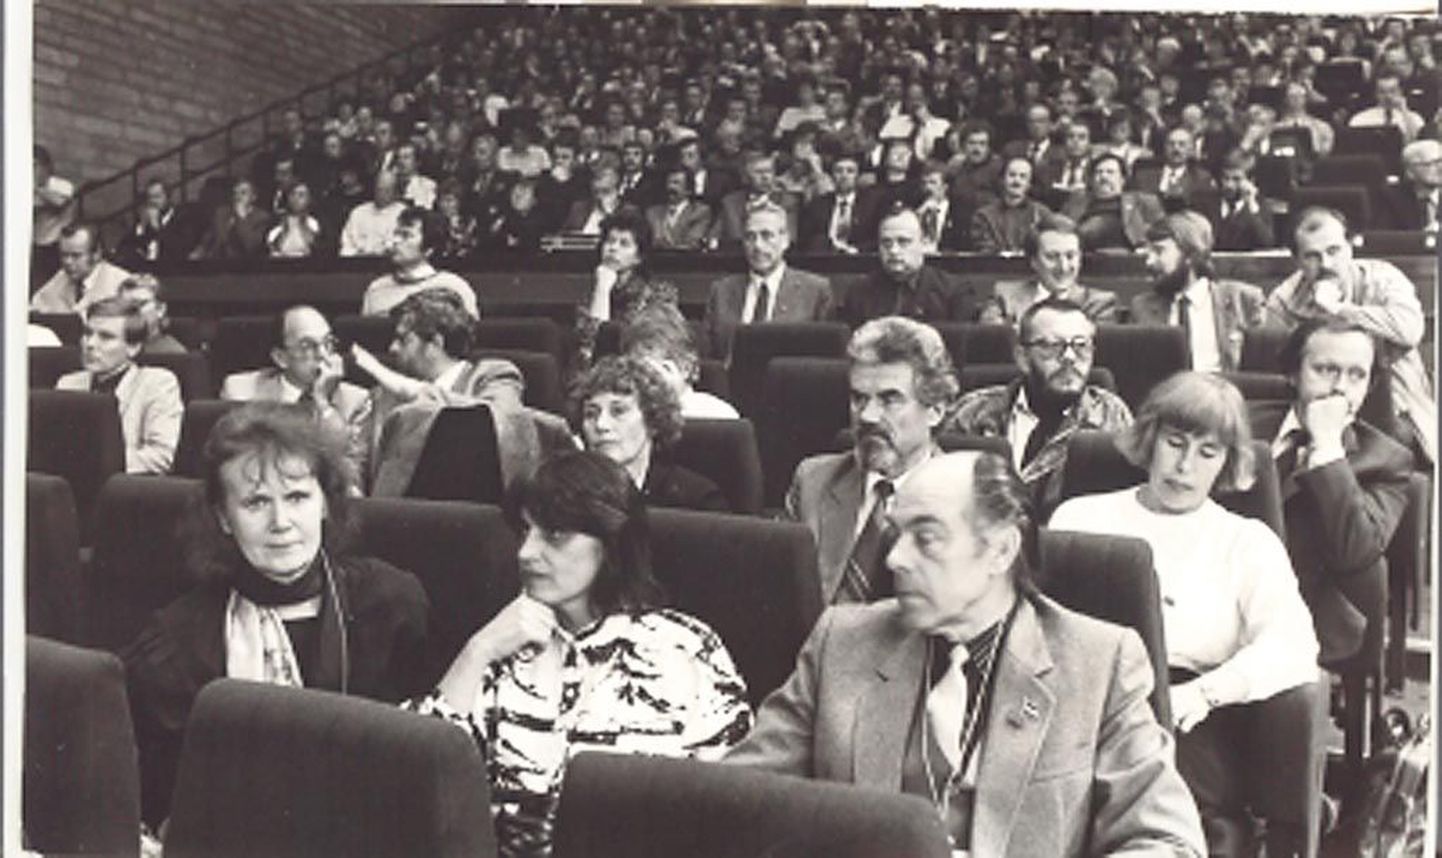 Kalju Suure foto Rahvarinde asutamiskongressist 1.-2. oktoobril 1988 järgib tollaseid lehefoto tavasid. Toonased delegaadid üle Eesti mäletavad, et tegelikult oli Tallinna linnahallis meeleolu palju särtsakam.